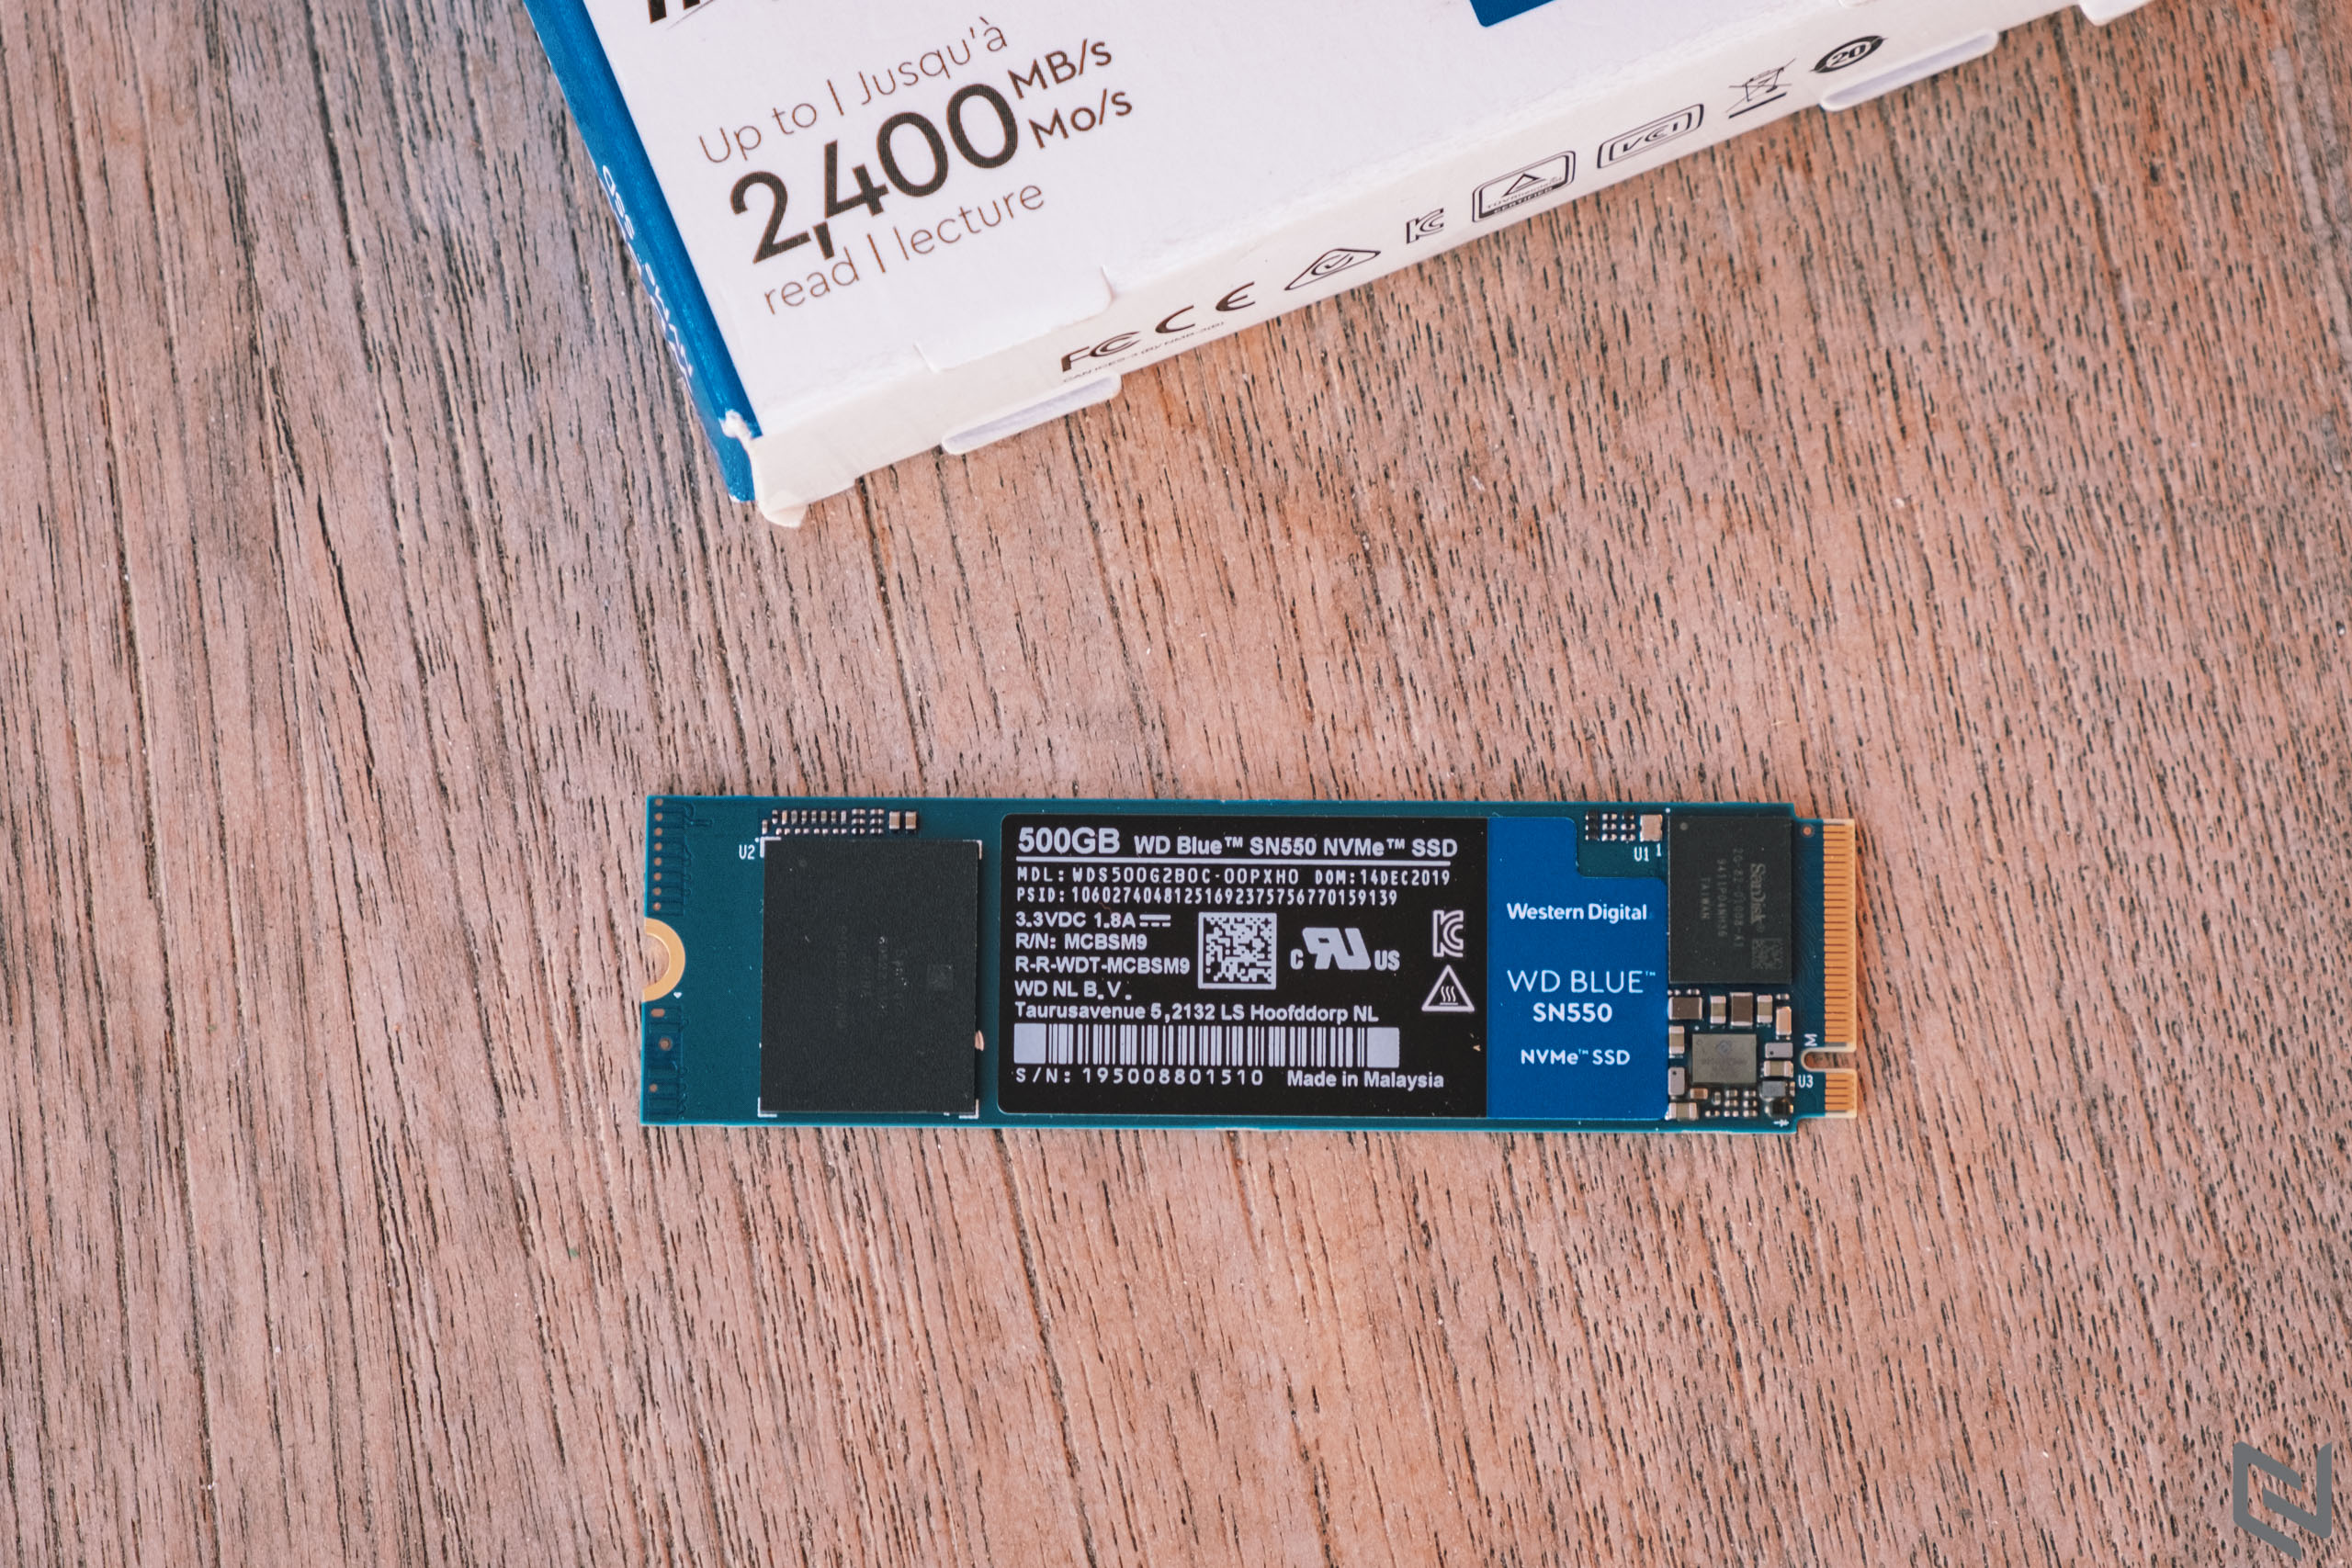 5 lý do khiến WD Blue SN550 500GB là SSD đáng mua nhất tầm giá dưới 2 triệu